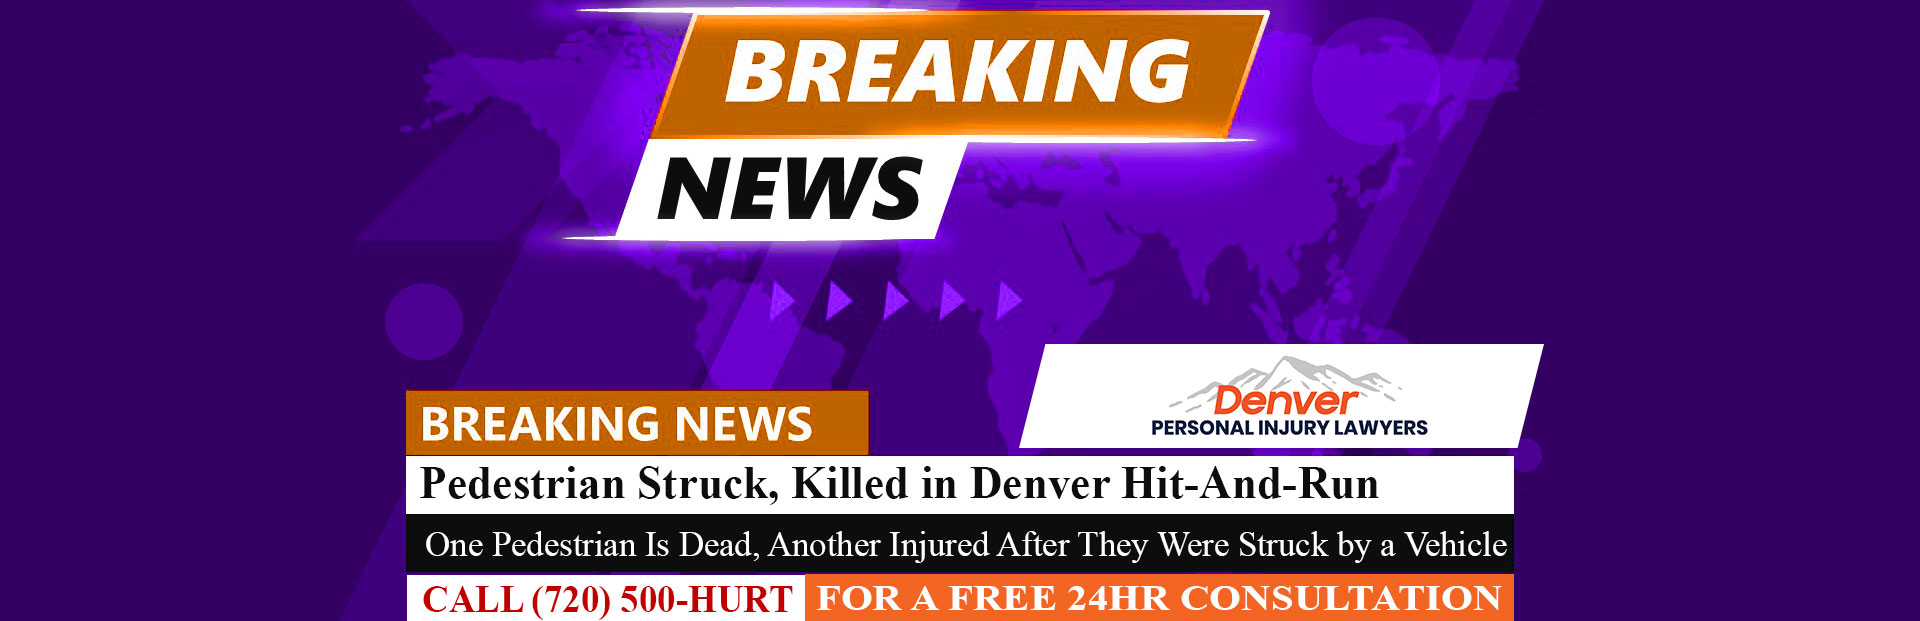 [11-13-22] Pedestrian Struck, Killed in Denver Hit-And-Run